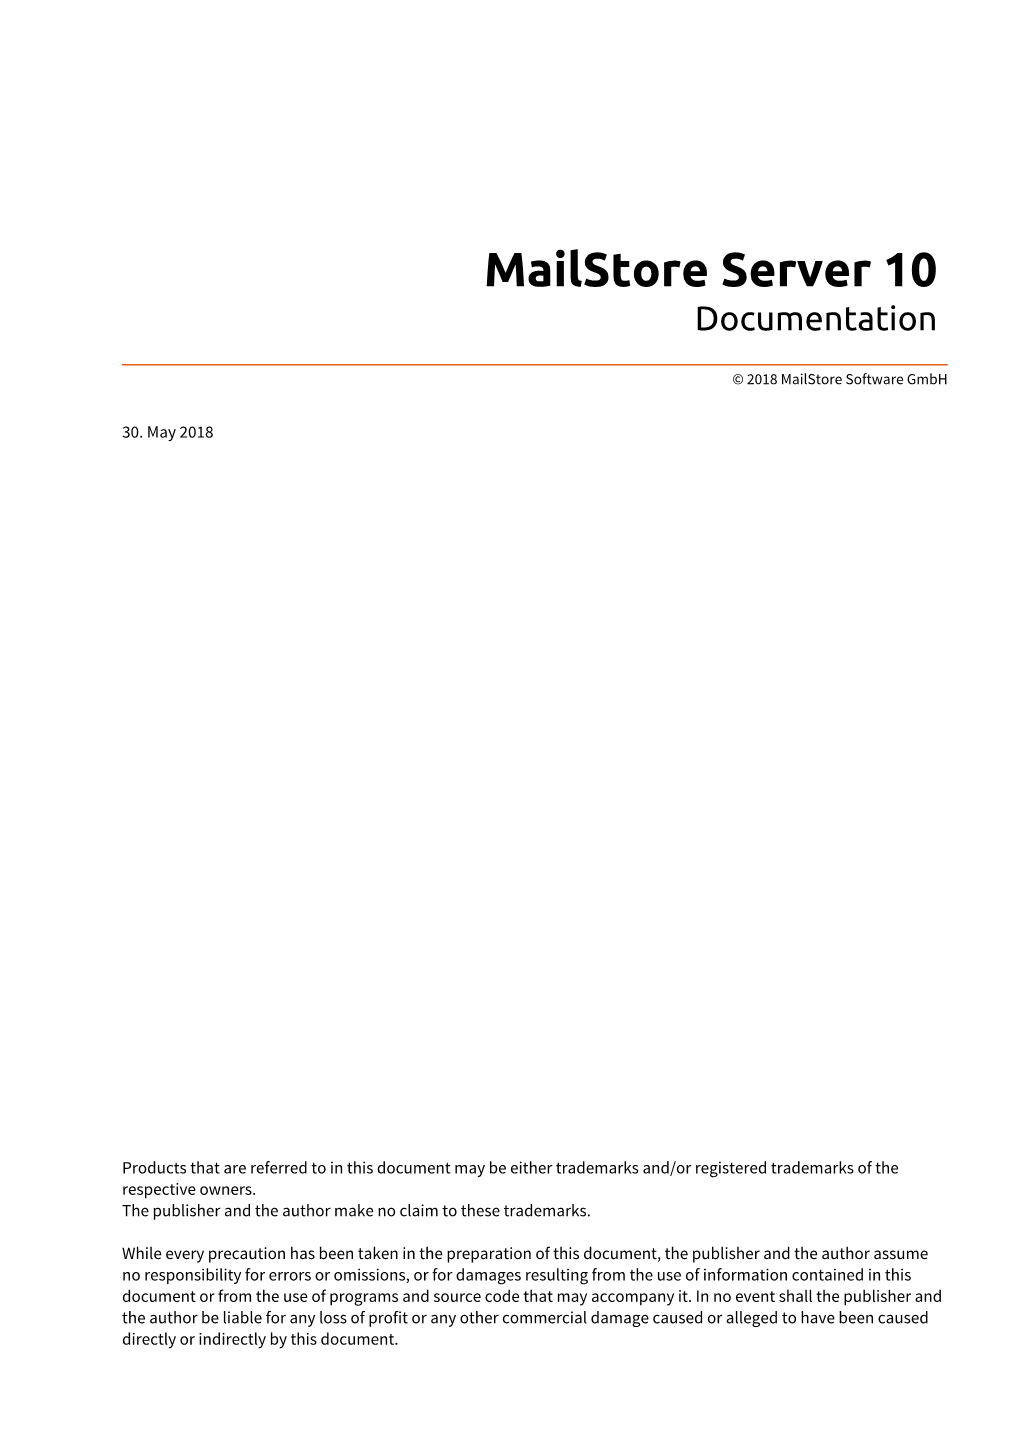 Mailstore Server 10 Documentation